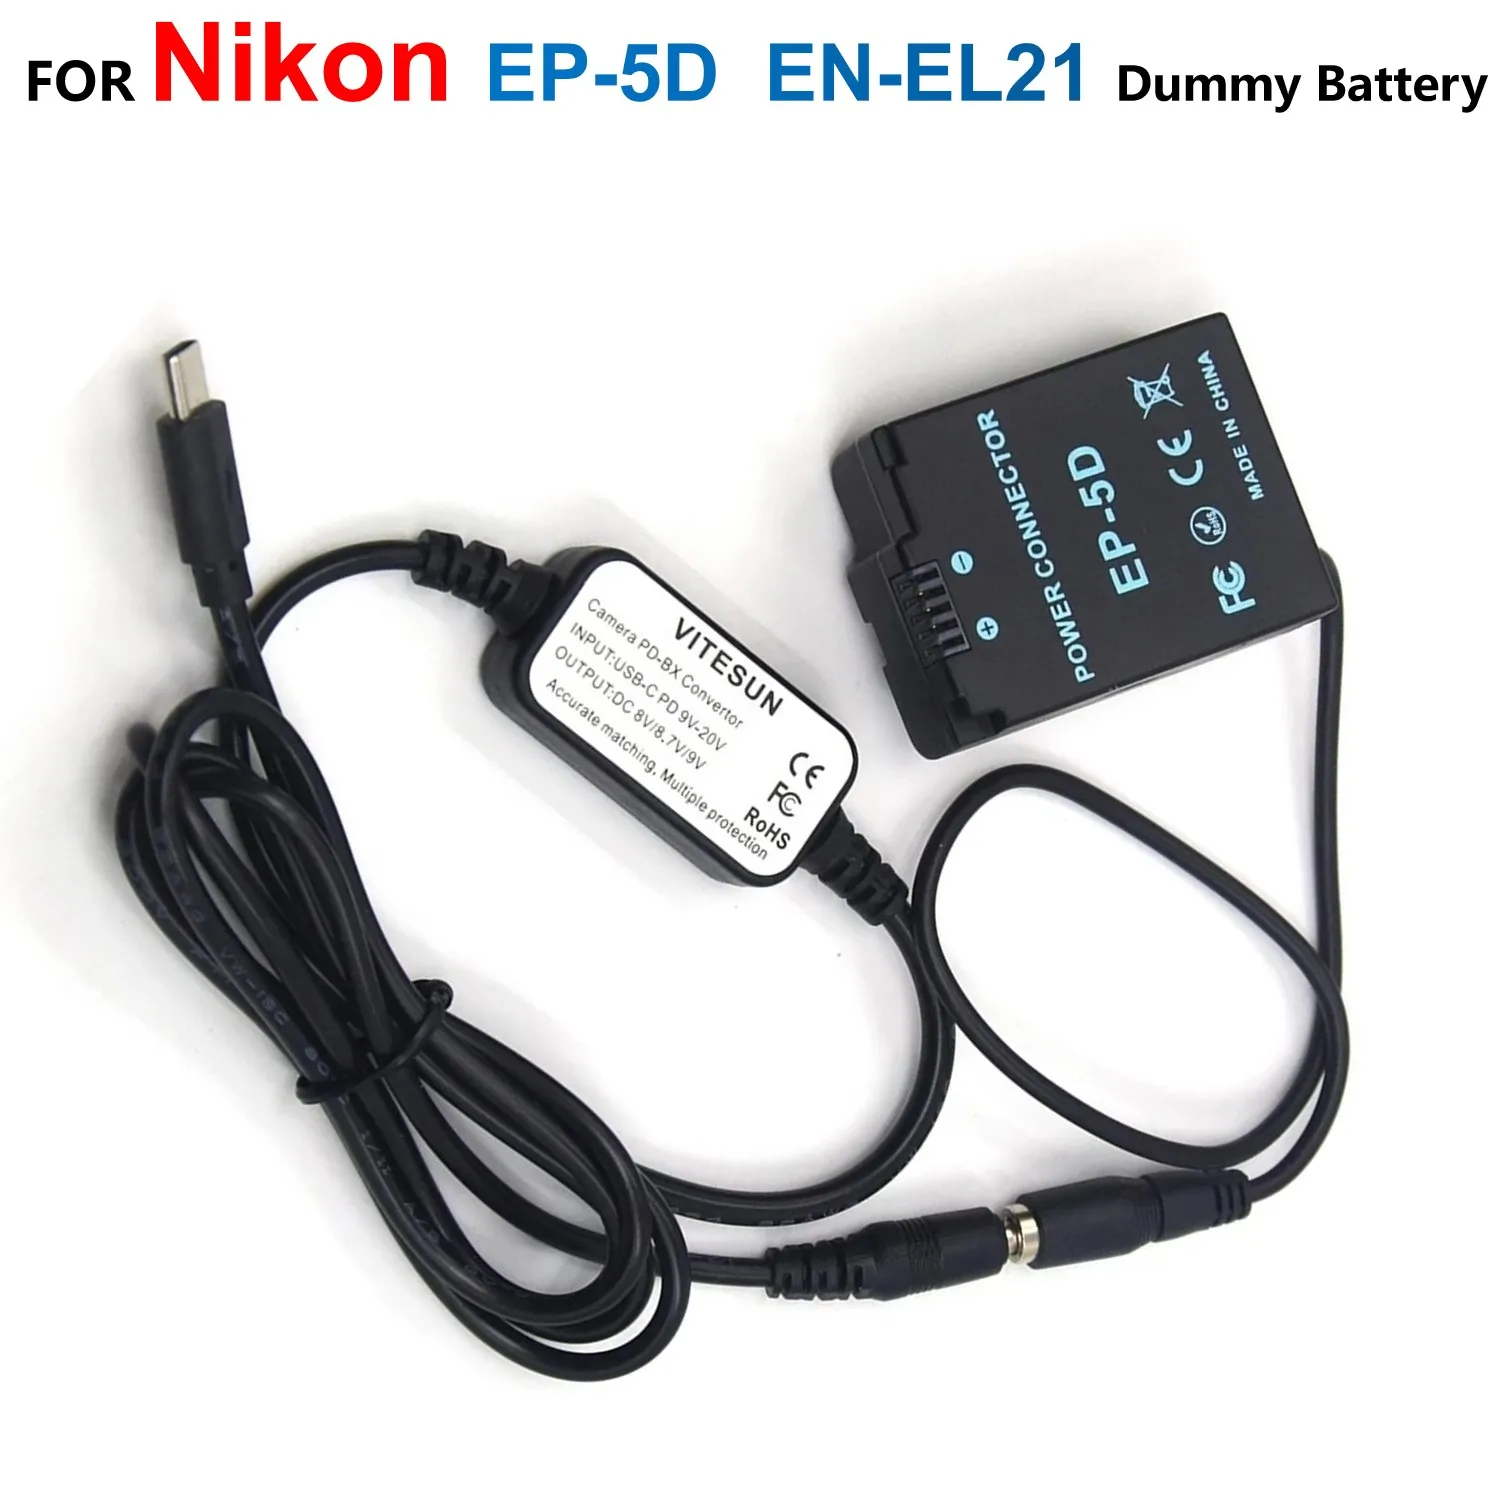 

EP-5D DC Coupler ENEL21 EN-EL21 Fake Battery Grip USB Type C USB-PD Converter To DC Cable For Nikon 1 V2 1V2